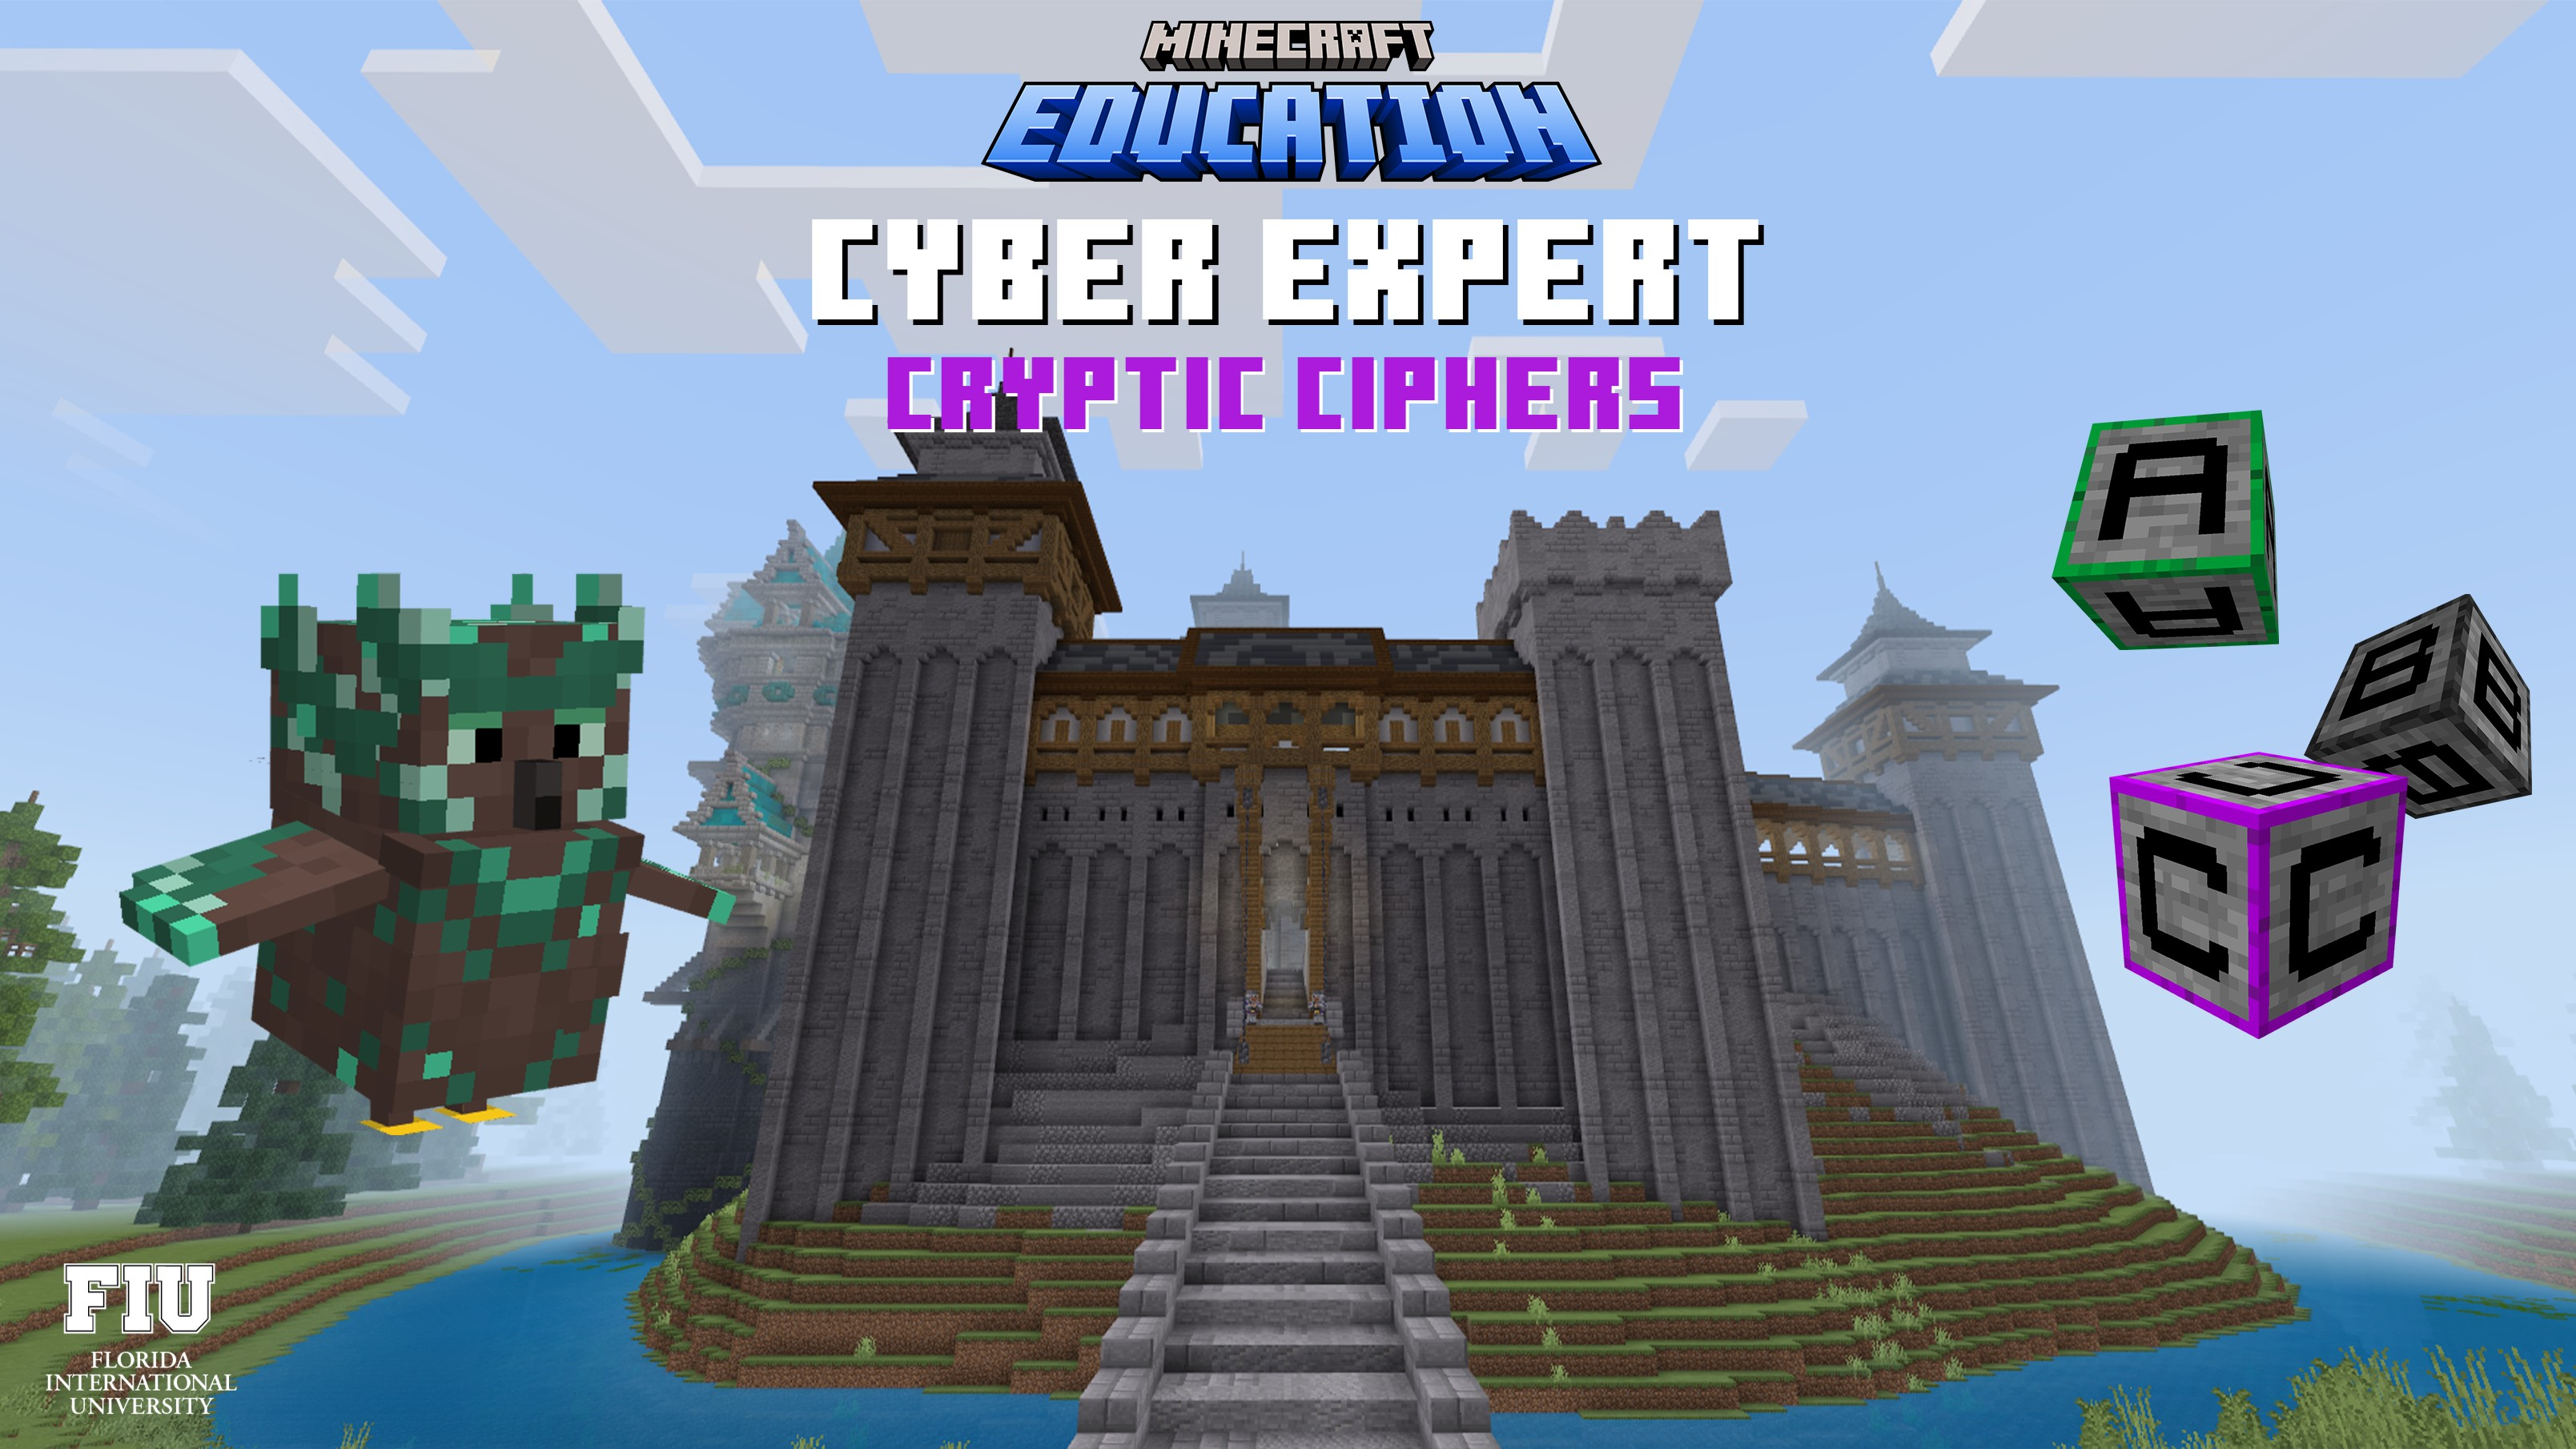 Minecraft Education Edition - Newcastle High School